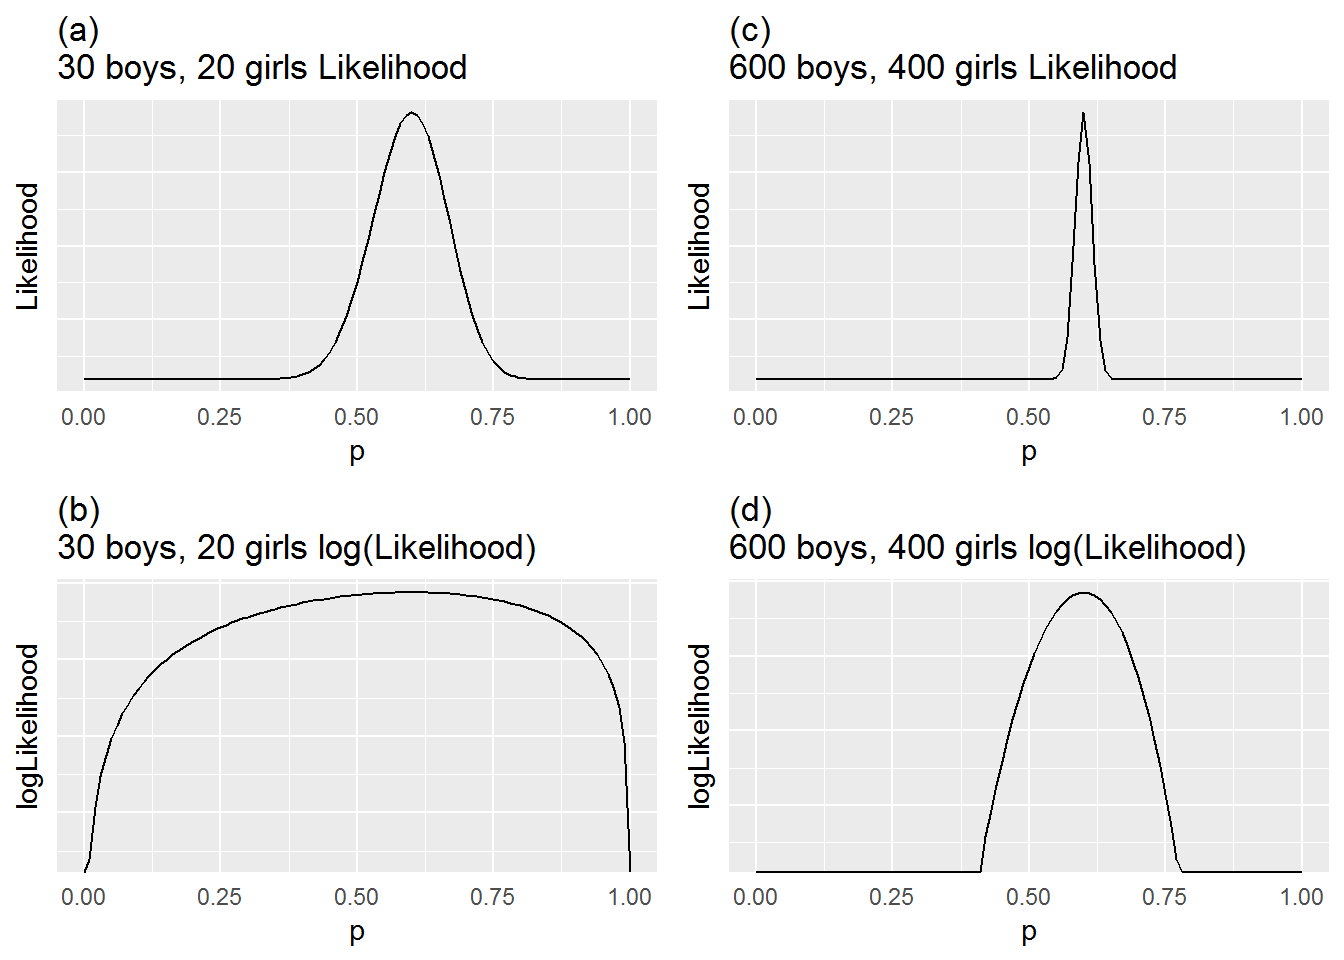 Likelihood and log-likelihood functions for 50 children (30 boys and 20 girls) and for 1000 children (600 boys and 400 girls).